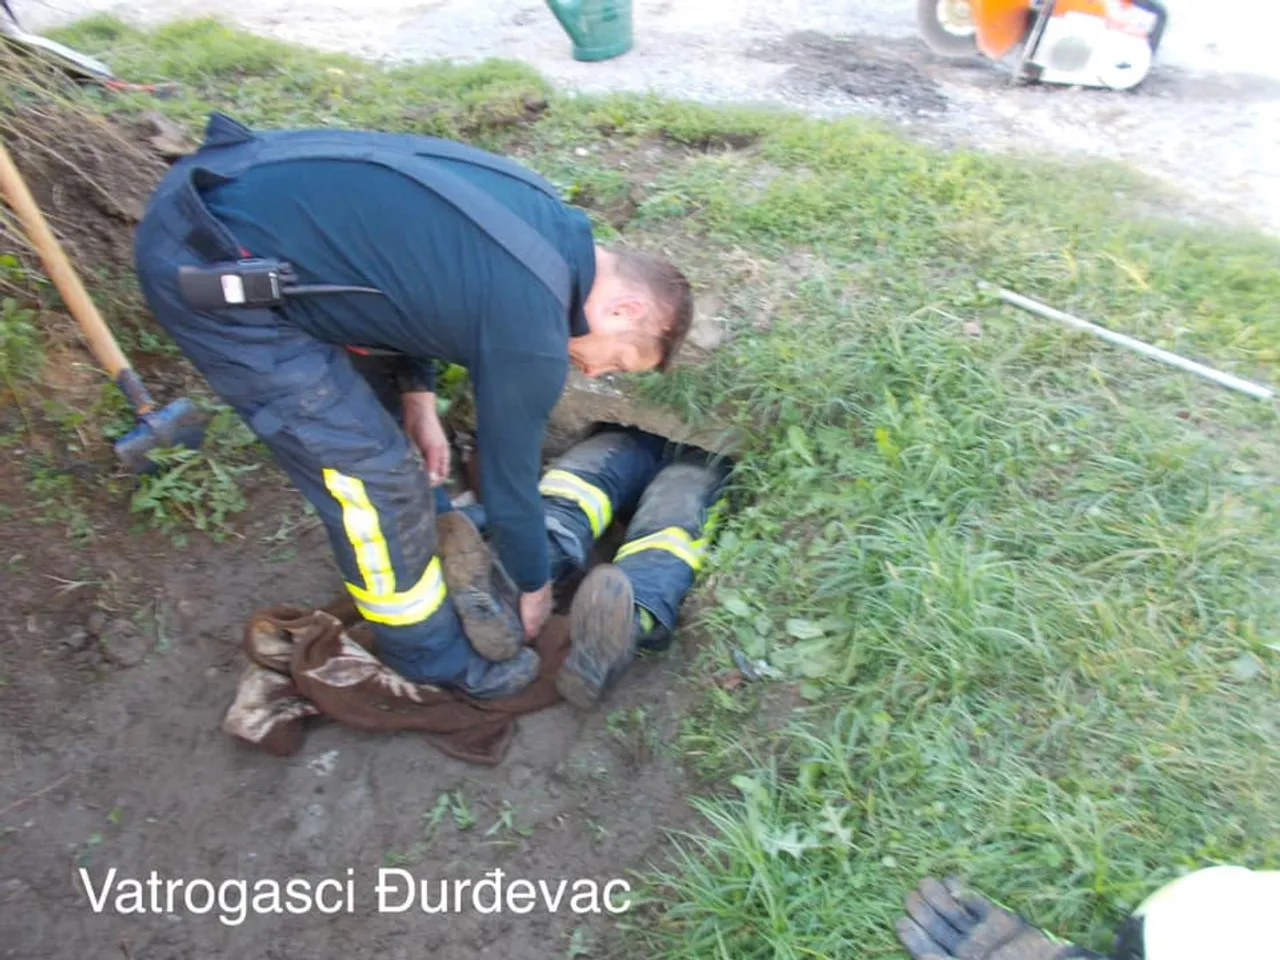 Vatrogasci uspješno spasili psa koji je zaglavio u uskoj cijevi kanala